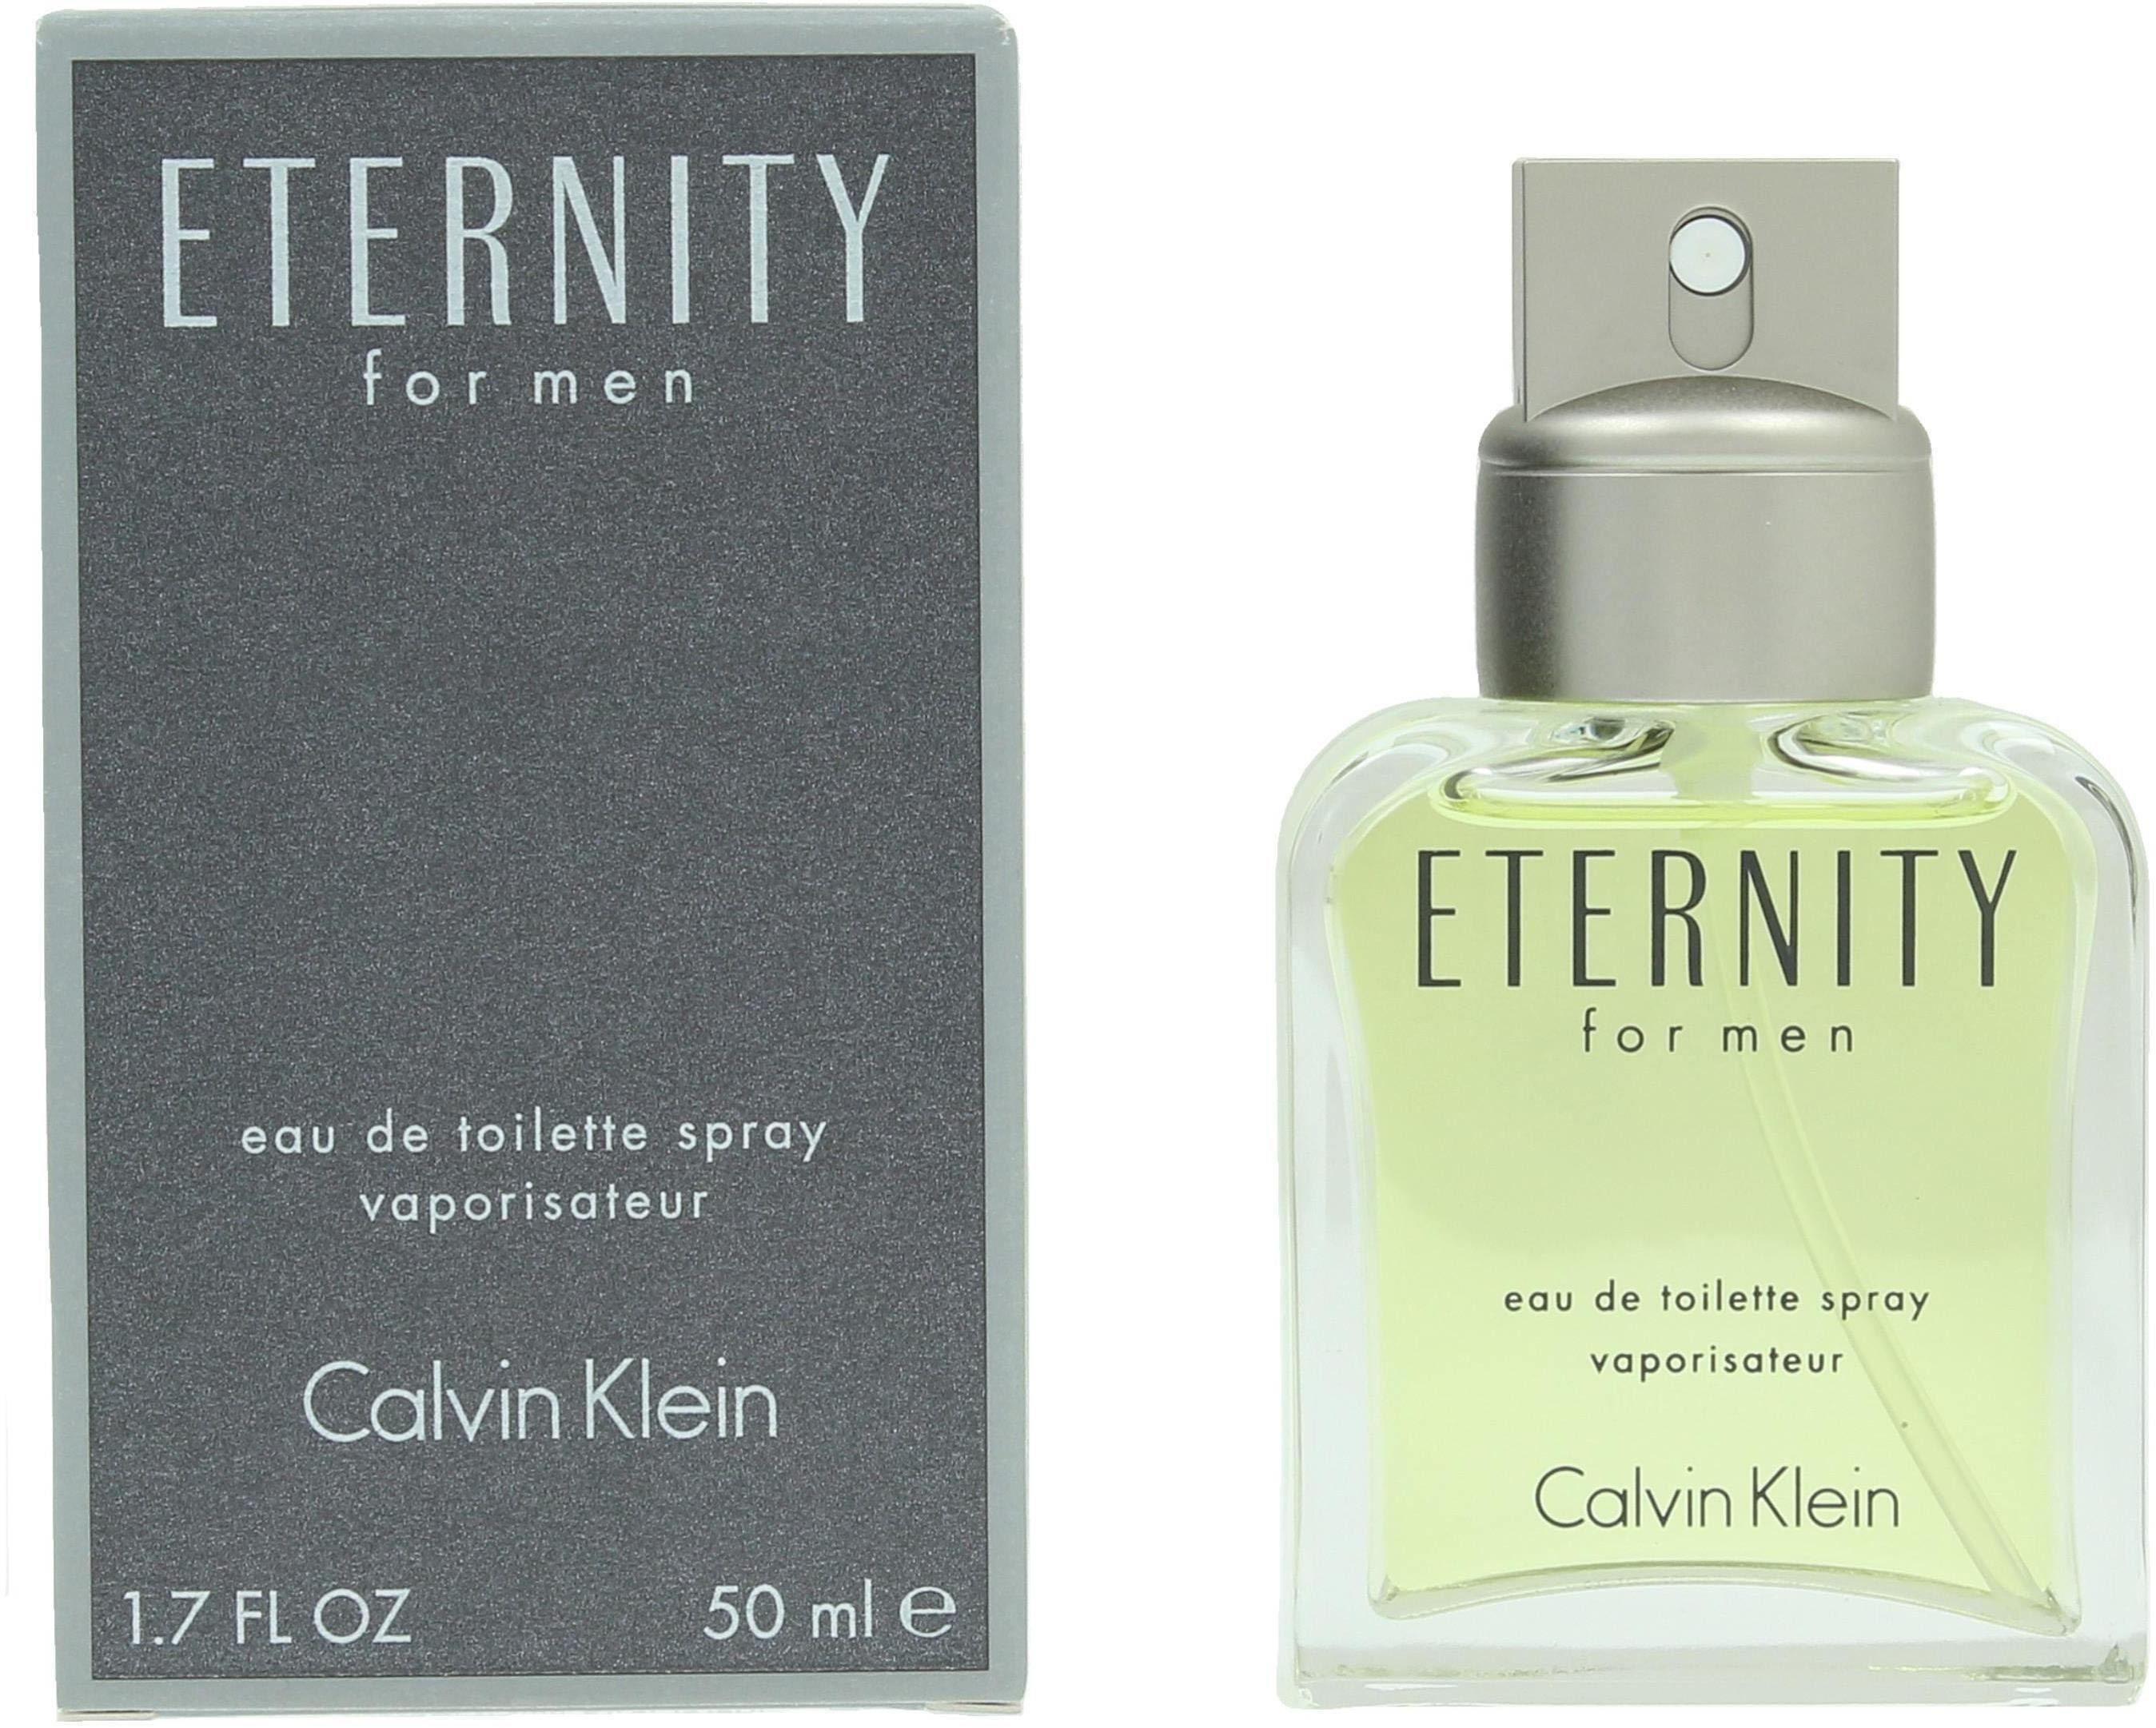 Calvin Klein Eau Toilette Eternity de men for